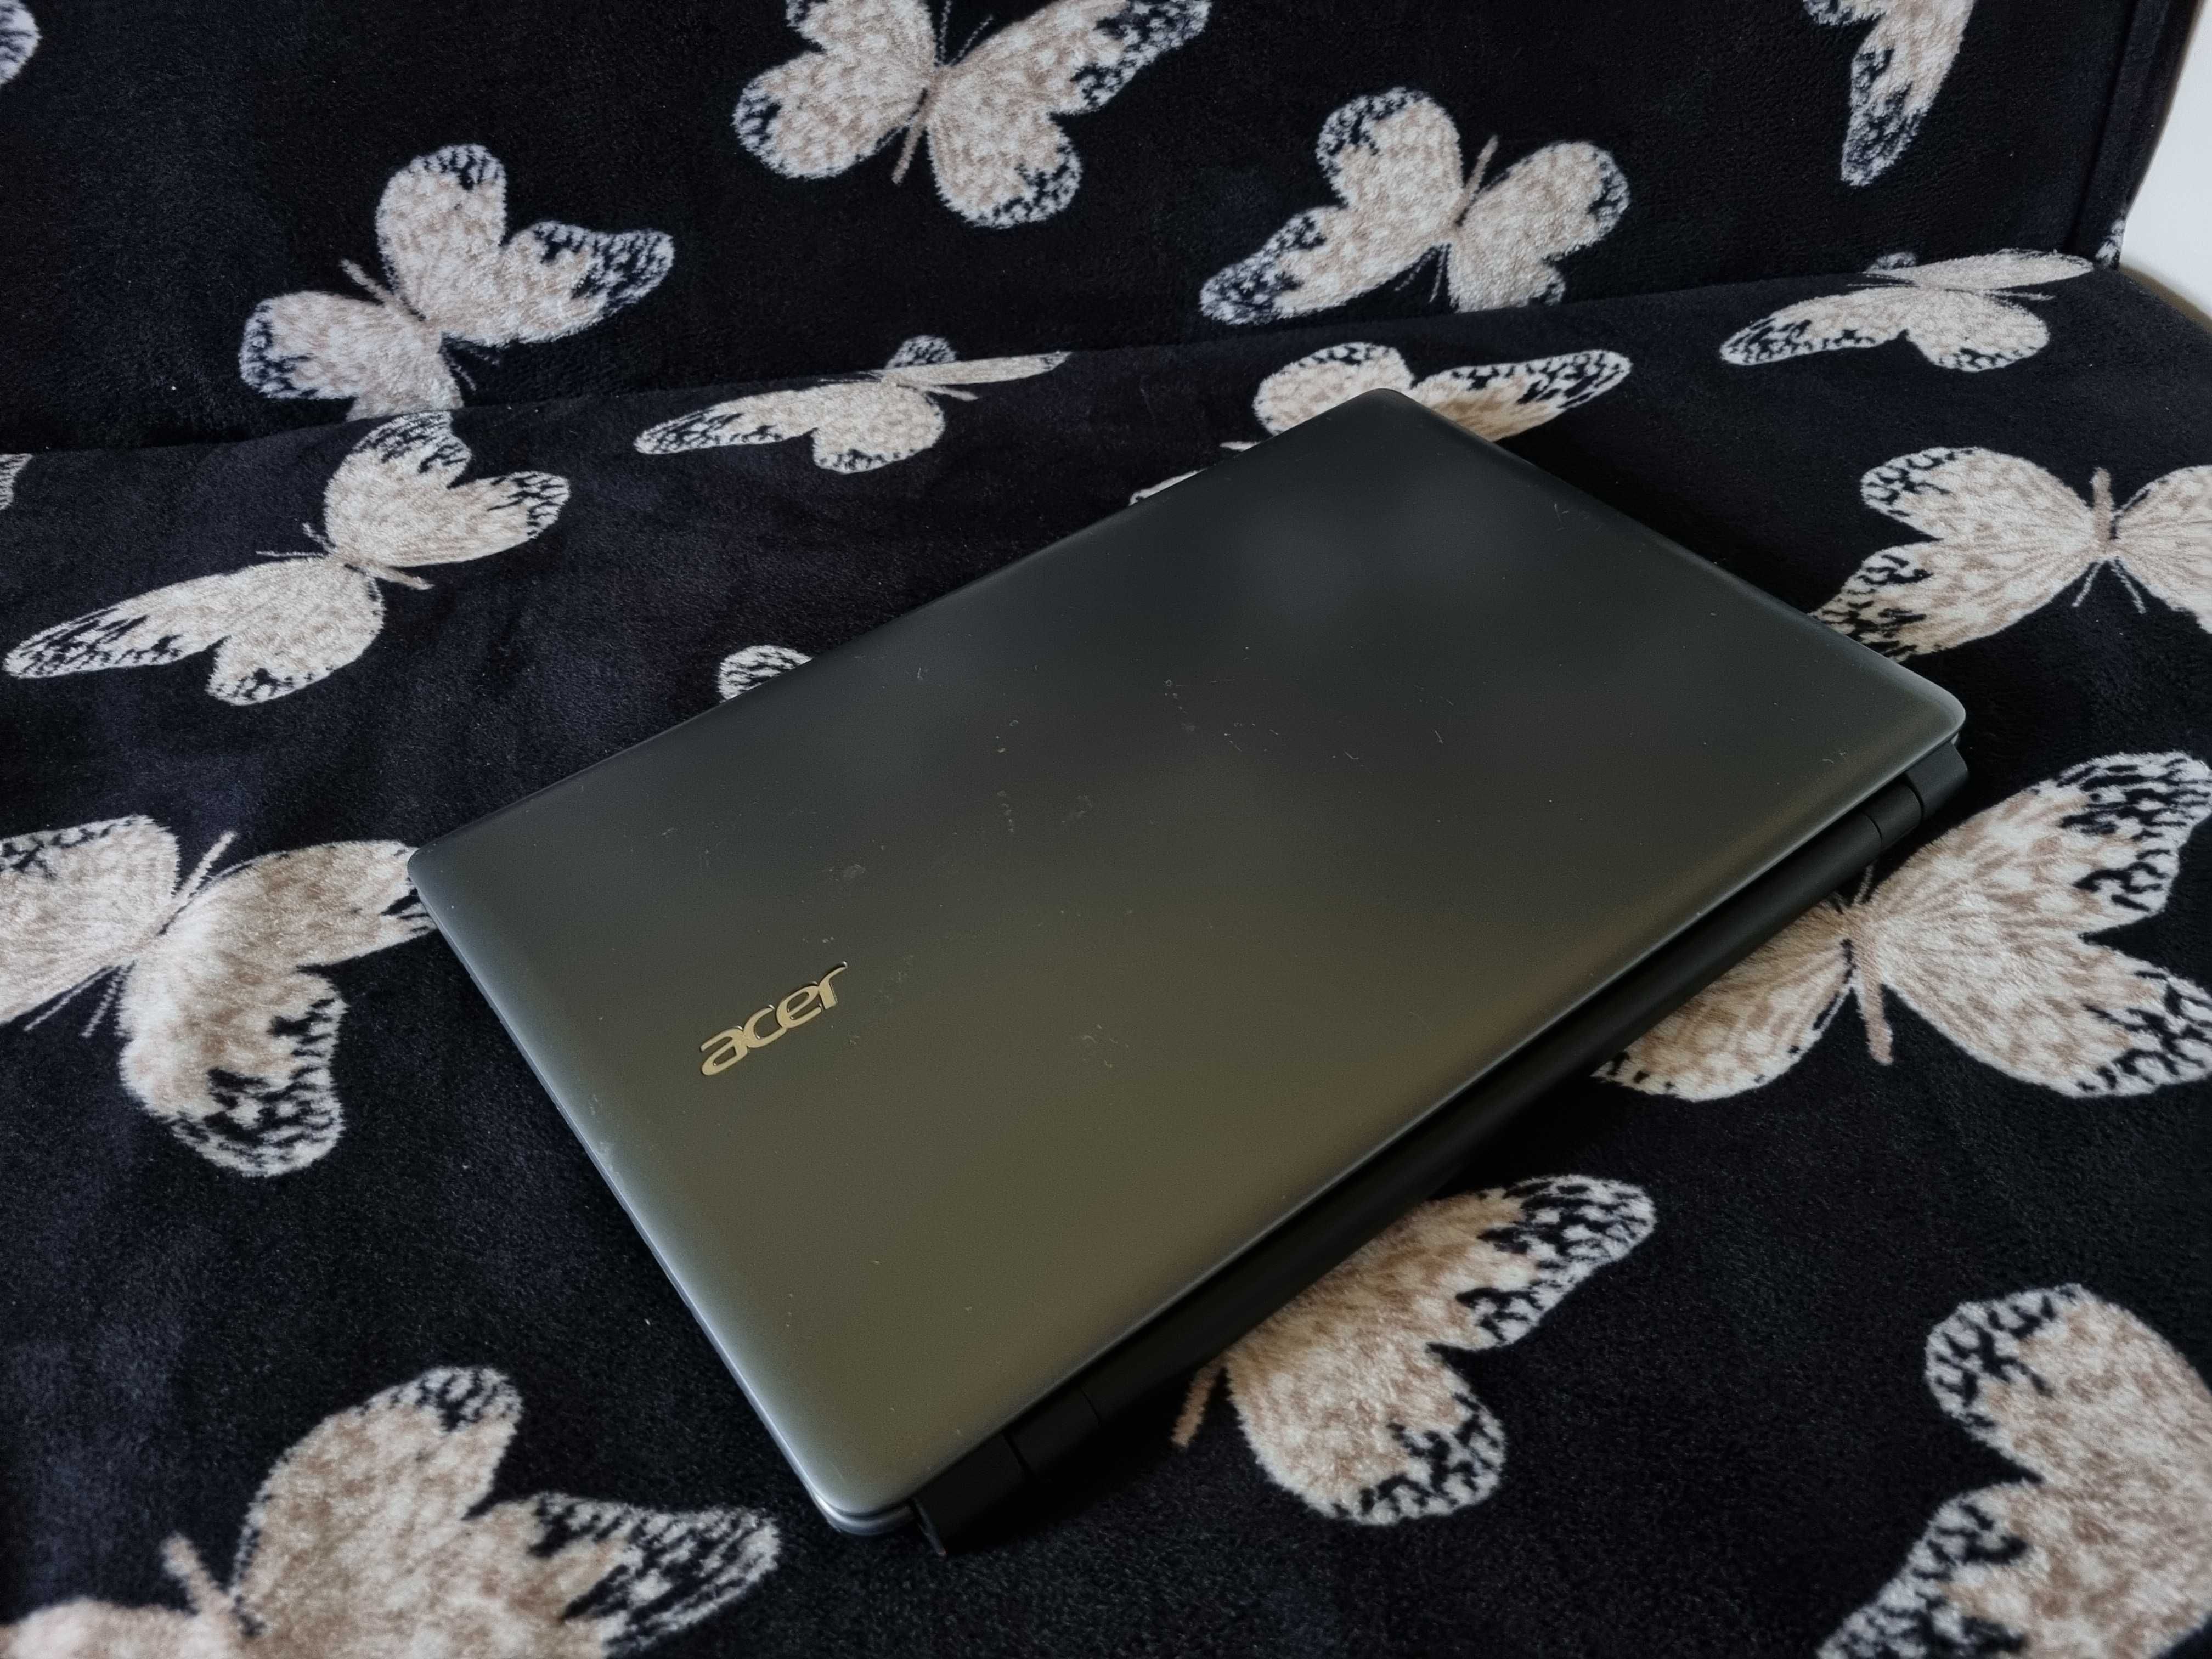 Okazie Laptop Acer V5 cu i7 ,8 Gb ram + SSD la doar 700lei